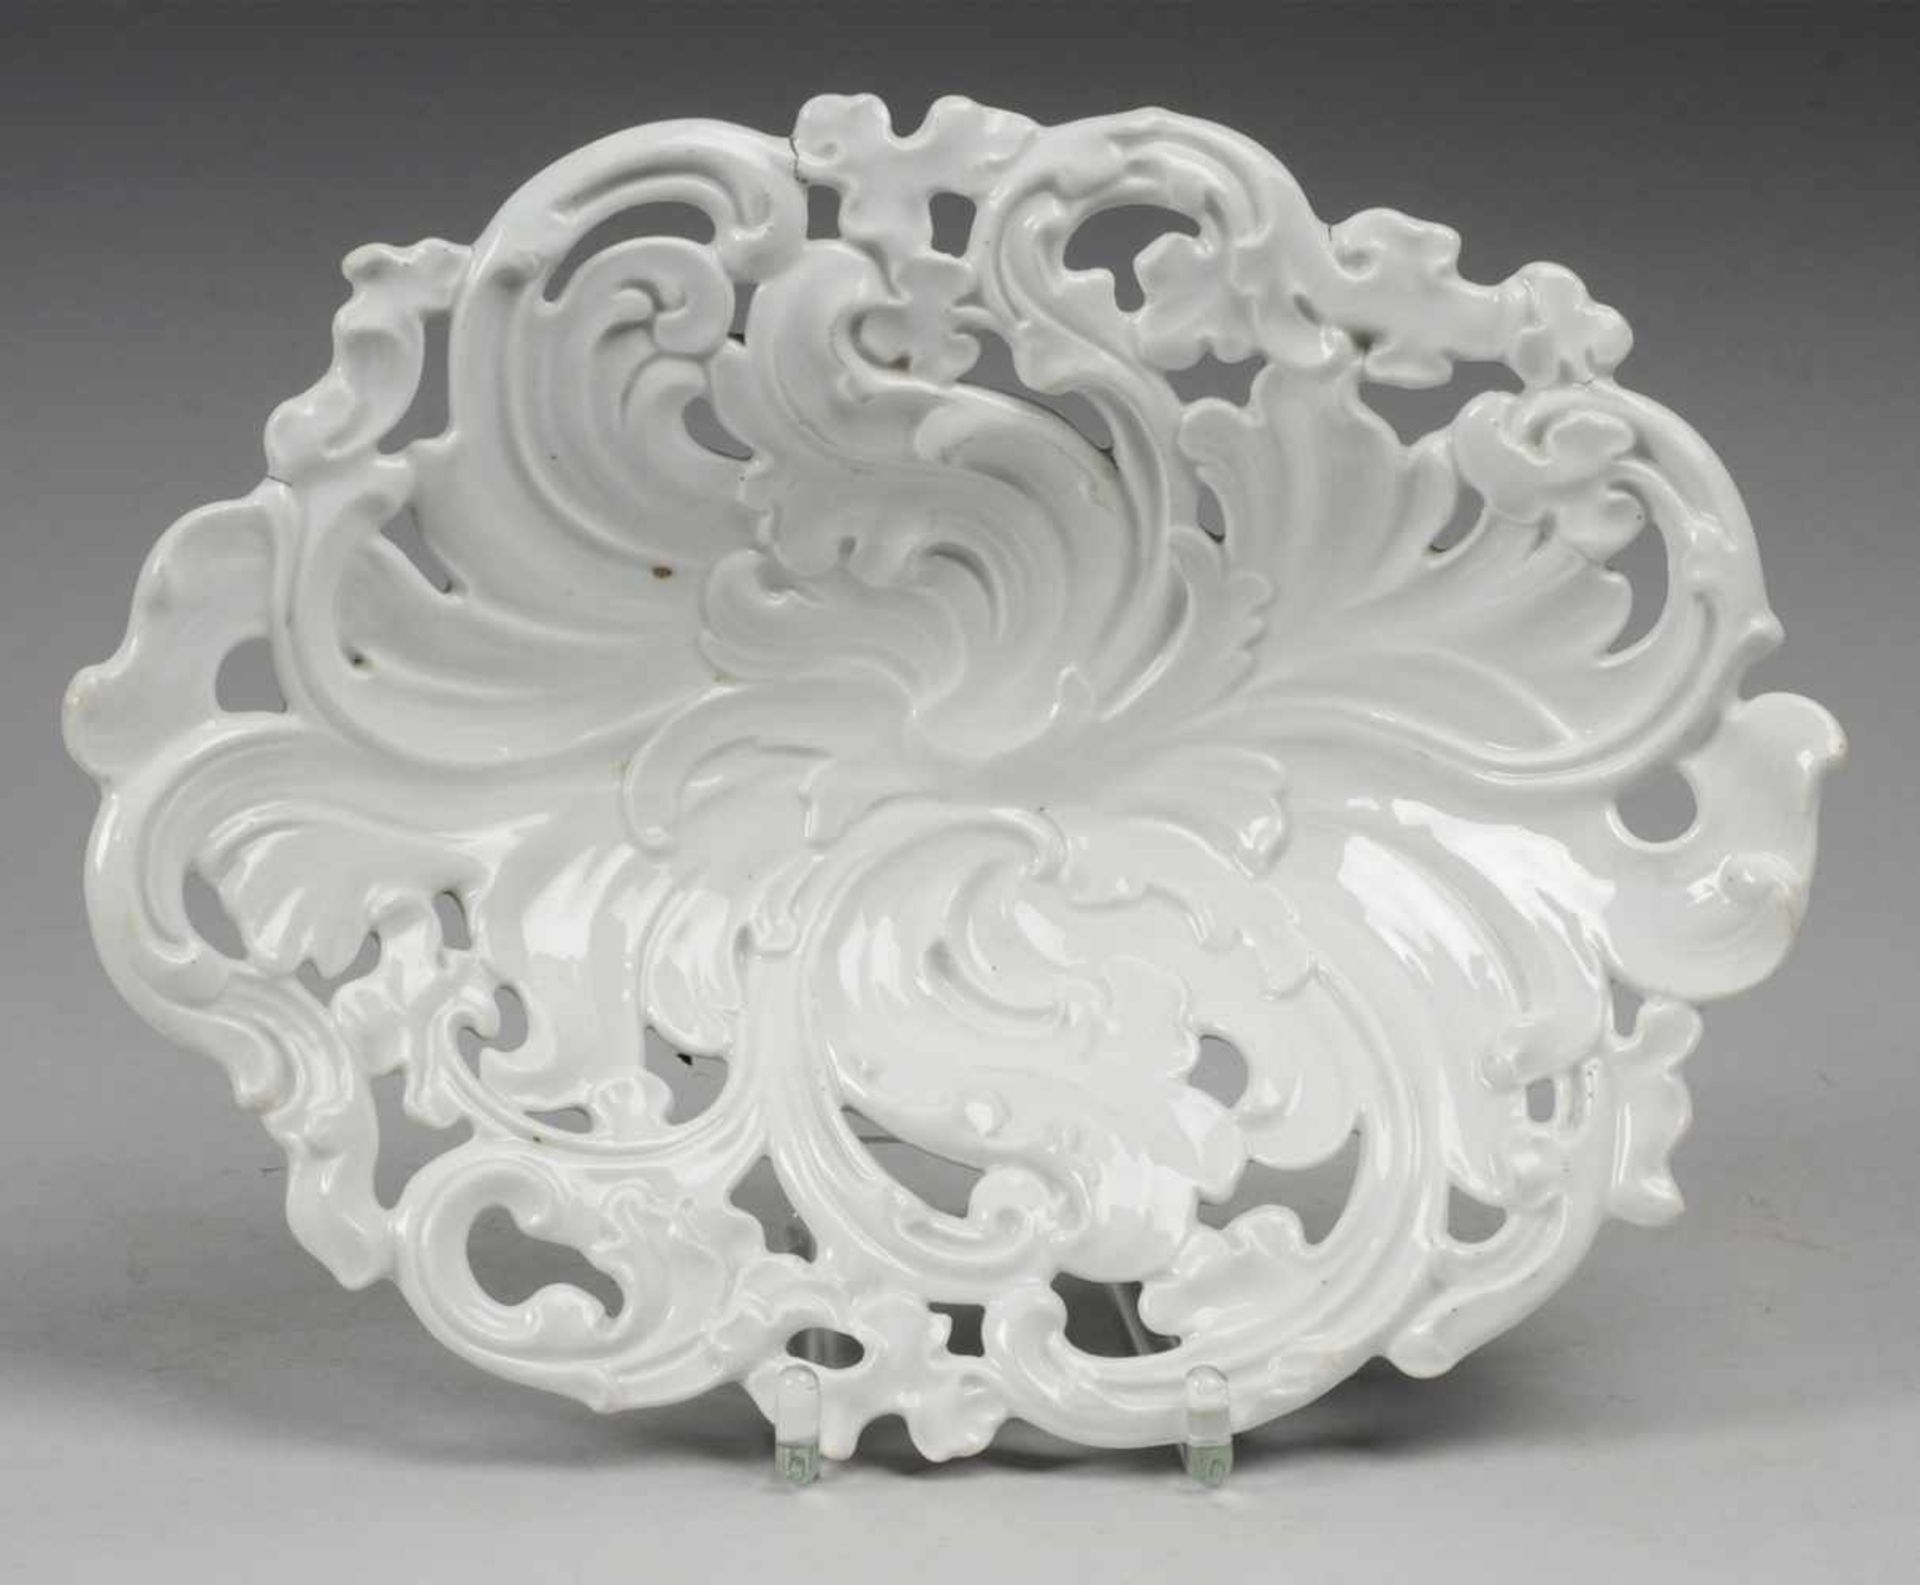 Schale mit floralem Reliefdekor Weiß, glasiert. Ovale gemuldete Schale mit kräftigem